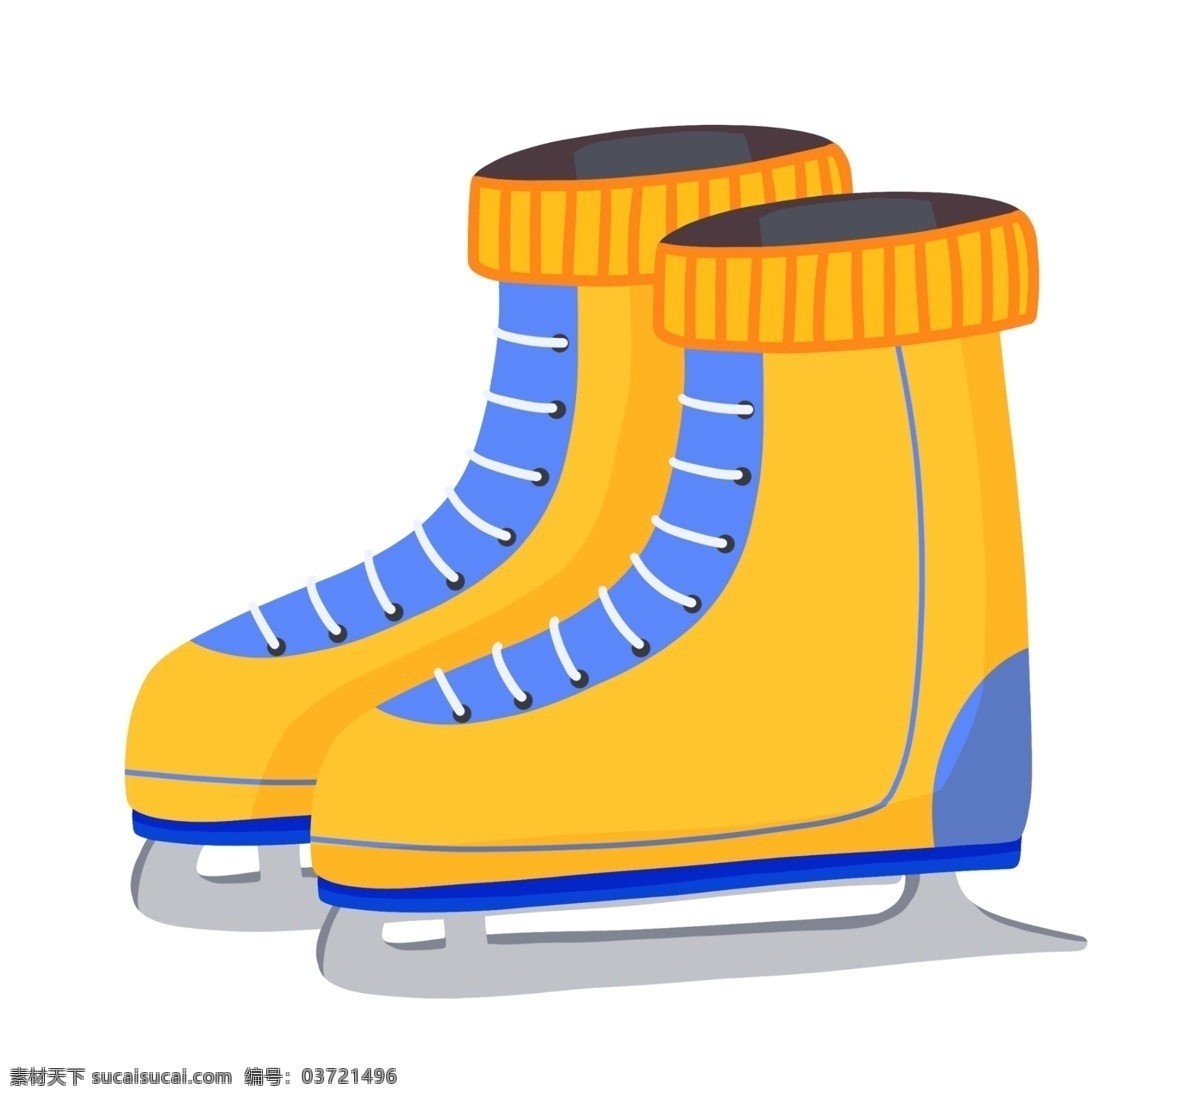 手绘 黄色 溜冰鞋 插画 黄色溜冰鞋 运动 工具 冬季溜冰鞋 户外溜冰鞋 溜冰鞋插画 卡通溜冰鞋